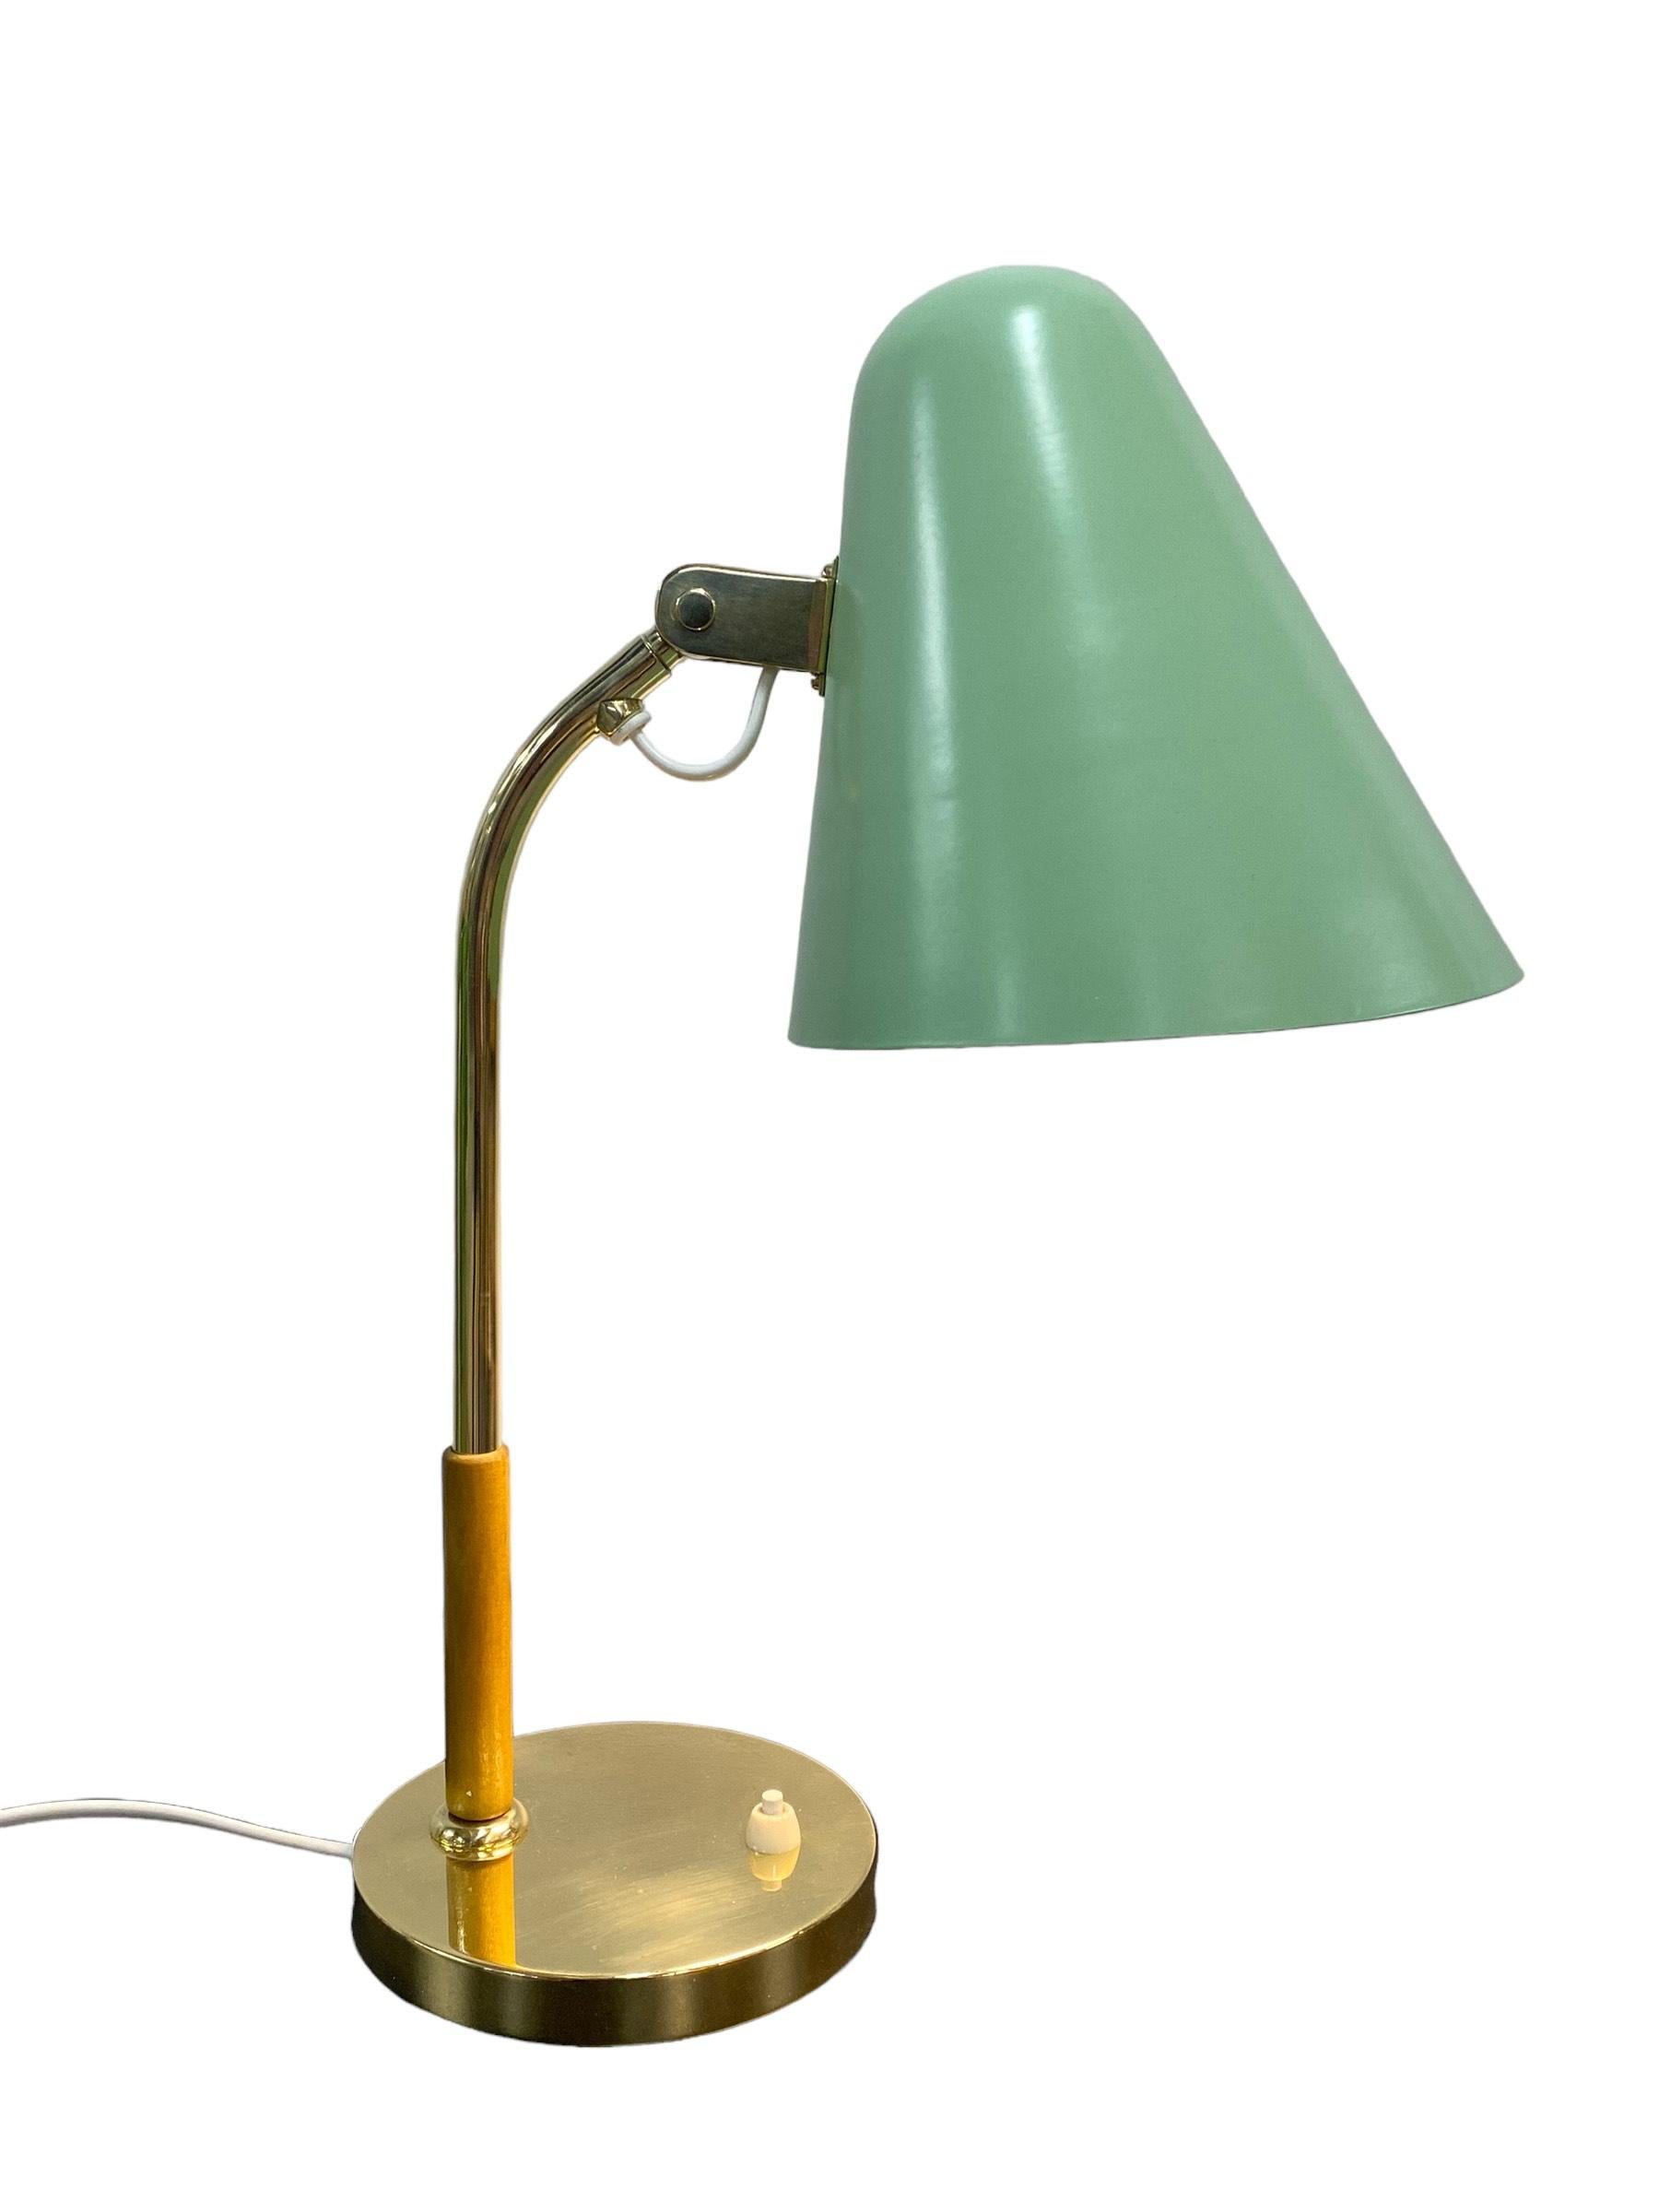 Schöne Paavo Tynell Tischlampe Modell 5233 in mintgrün, hergestellt von Taito Oy in Finnland in den 1950er Jahren. Eine klassische Tynell-Lampe mit einem neuen, lebendigen Look und in ausgezeichnetem Zustand. Der Artikel trägt die Aufschrift Taito